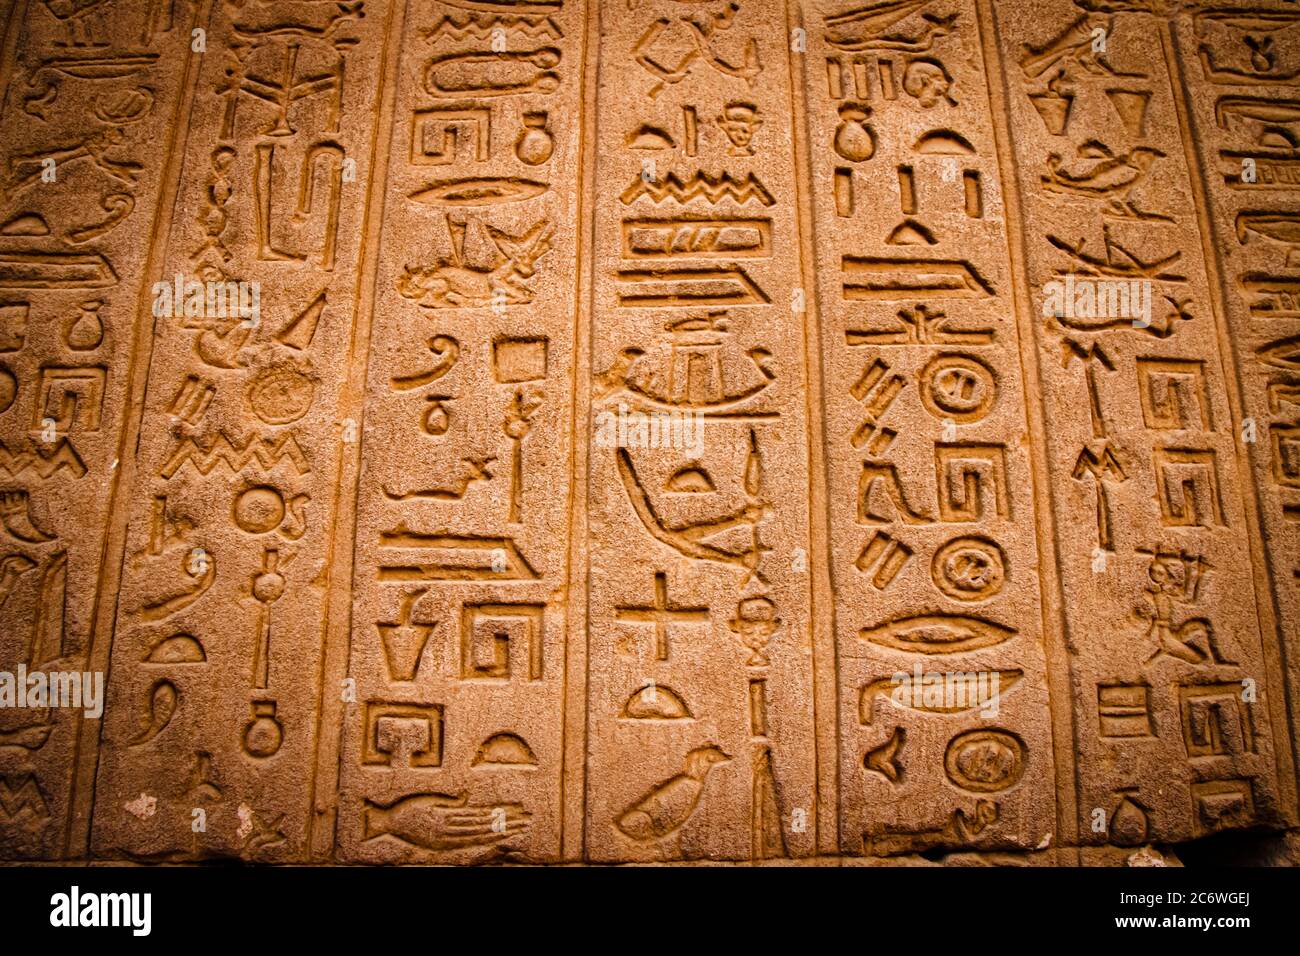 Escritura egipcia antigua, jeroglíficos egipcios. Foto de stock